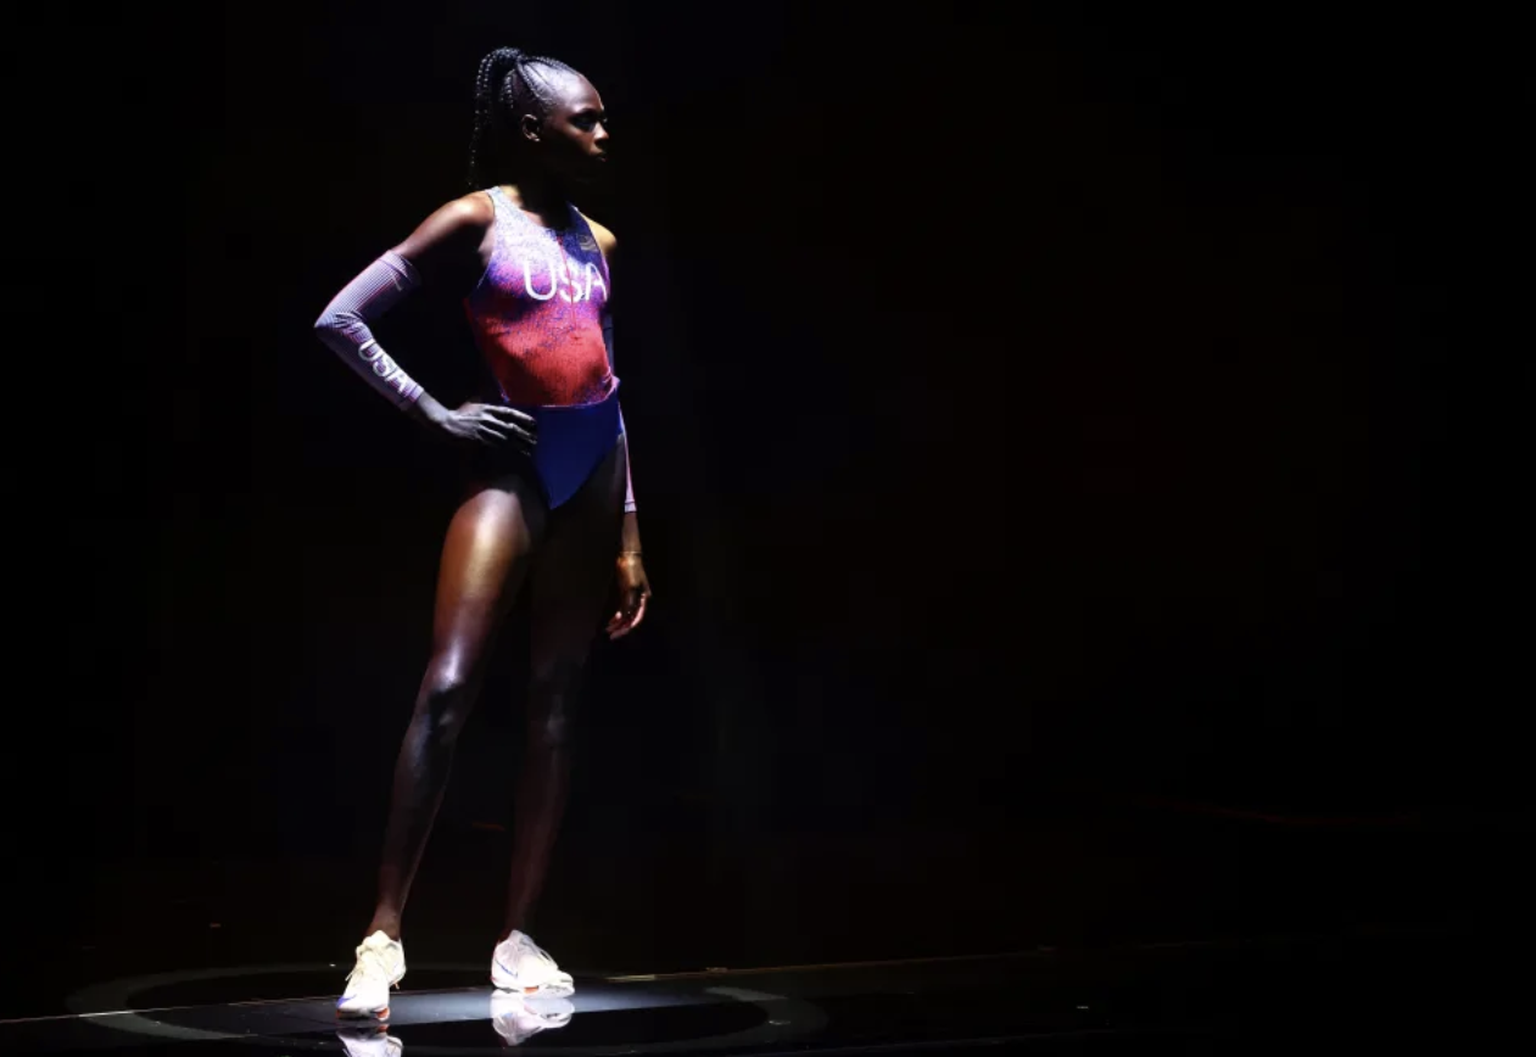 Das von Nike präsentierte Olympia-Tenue wird von einigen Athletinnen kritisiert.